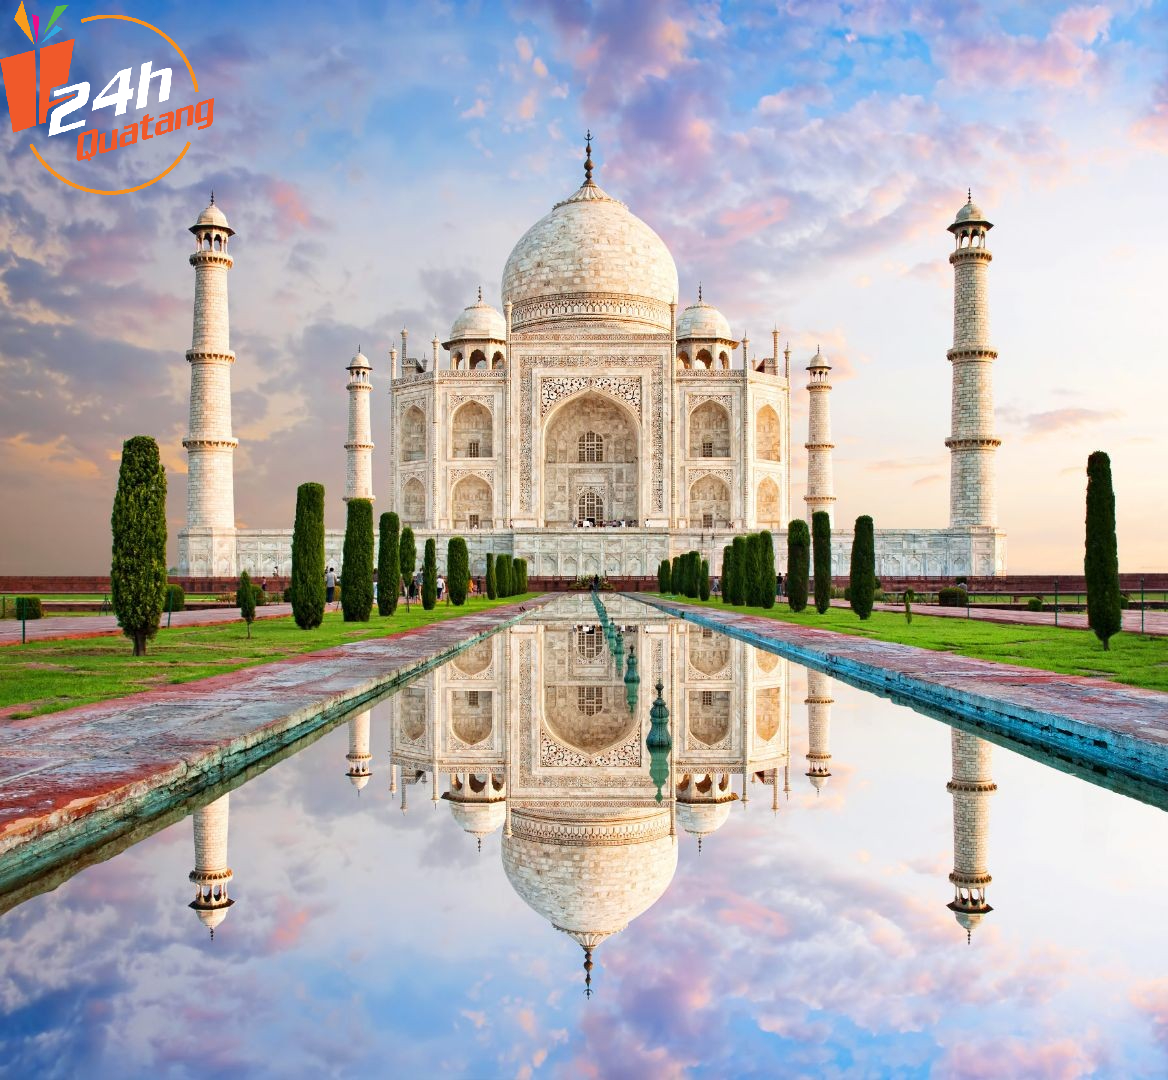 Quatang24h.com.vn - “Kỳ quan thế giới” Taj Mahal được dựng lên để tưởng nhớ hoàng hậu.